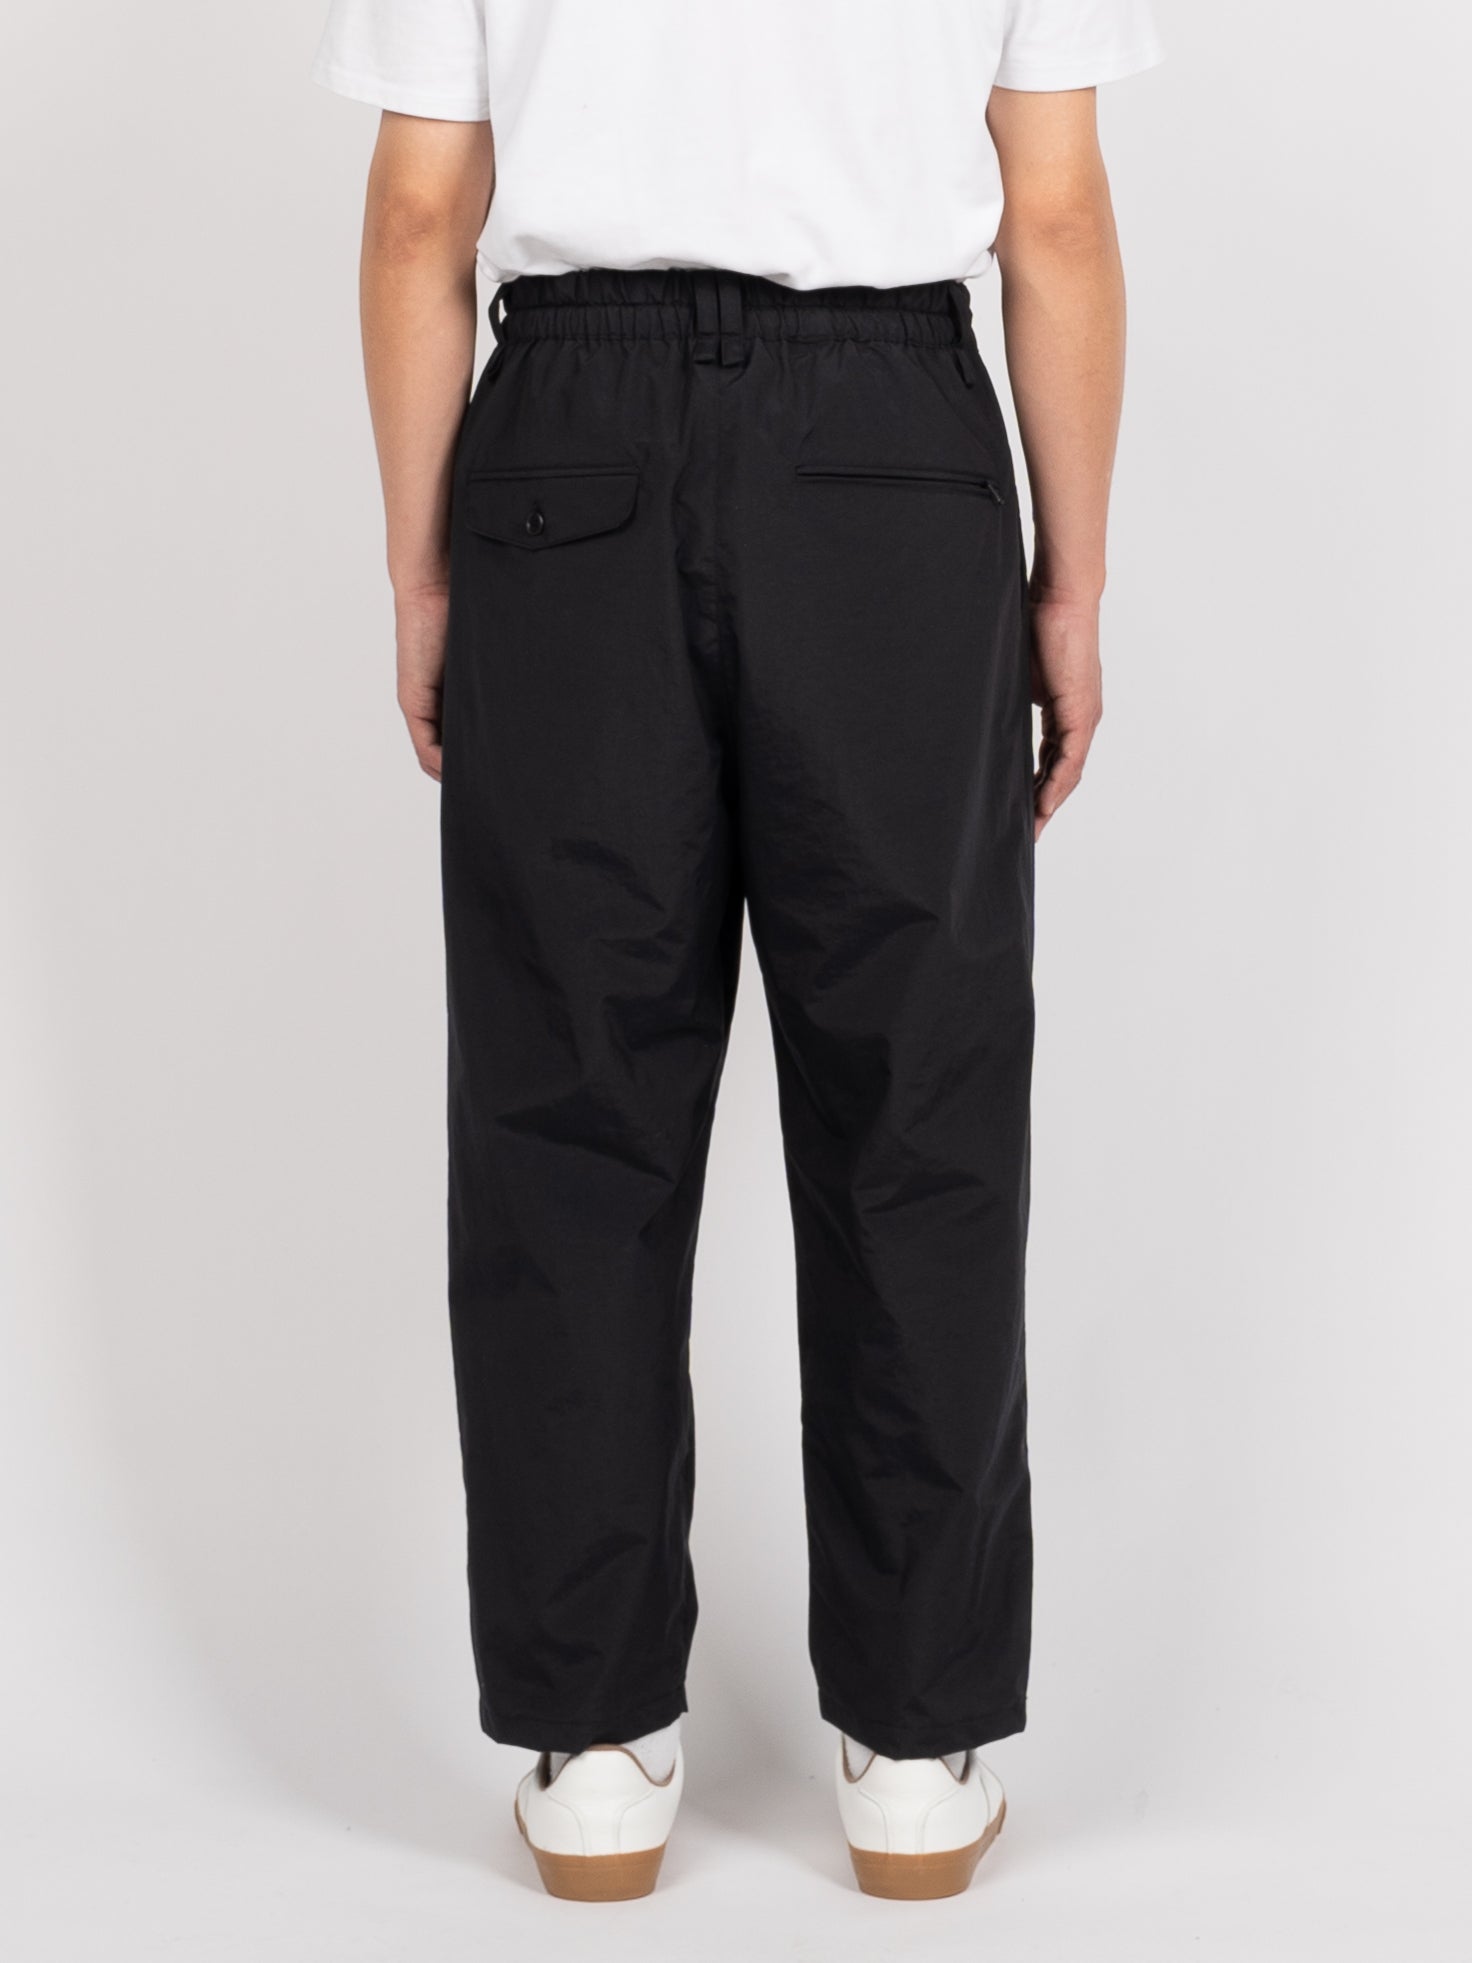 is-ness Packable EZ Pants (Black)